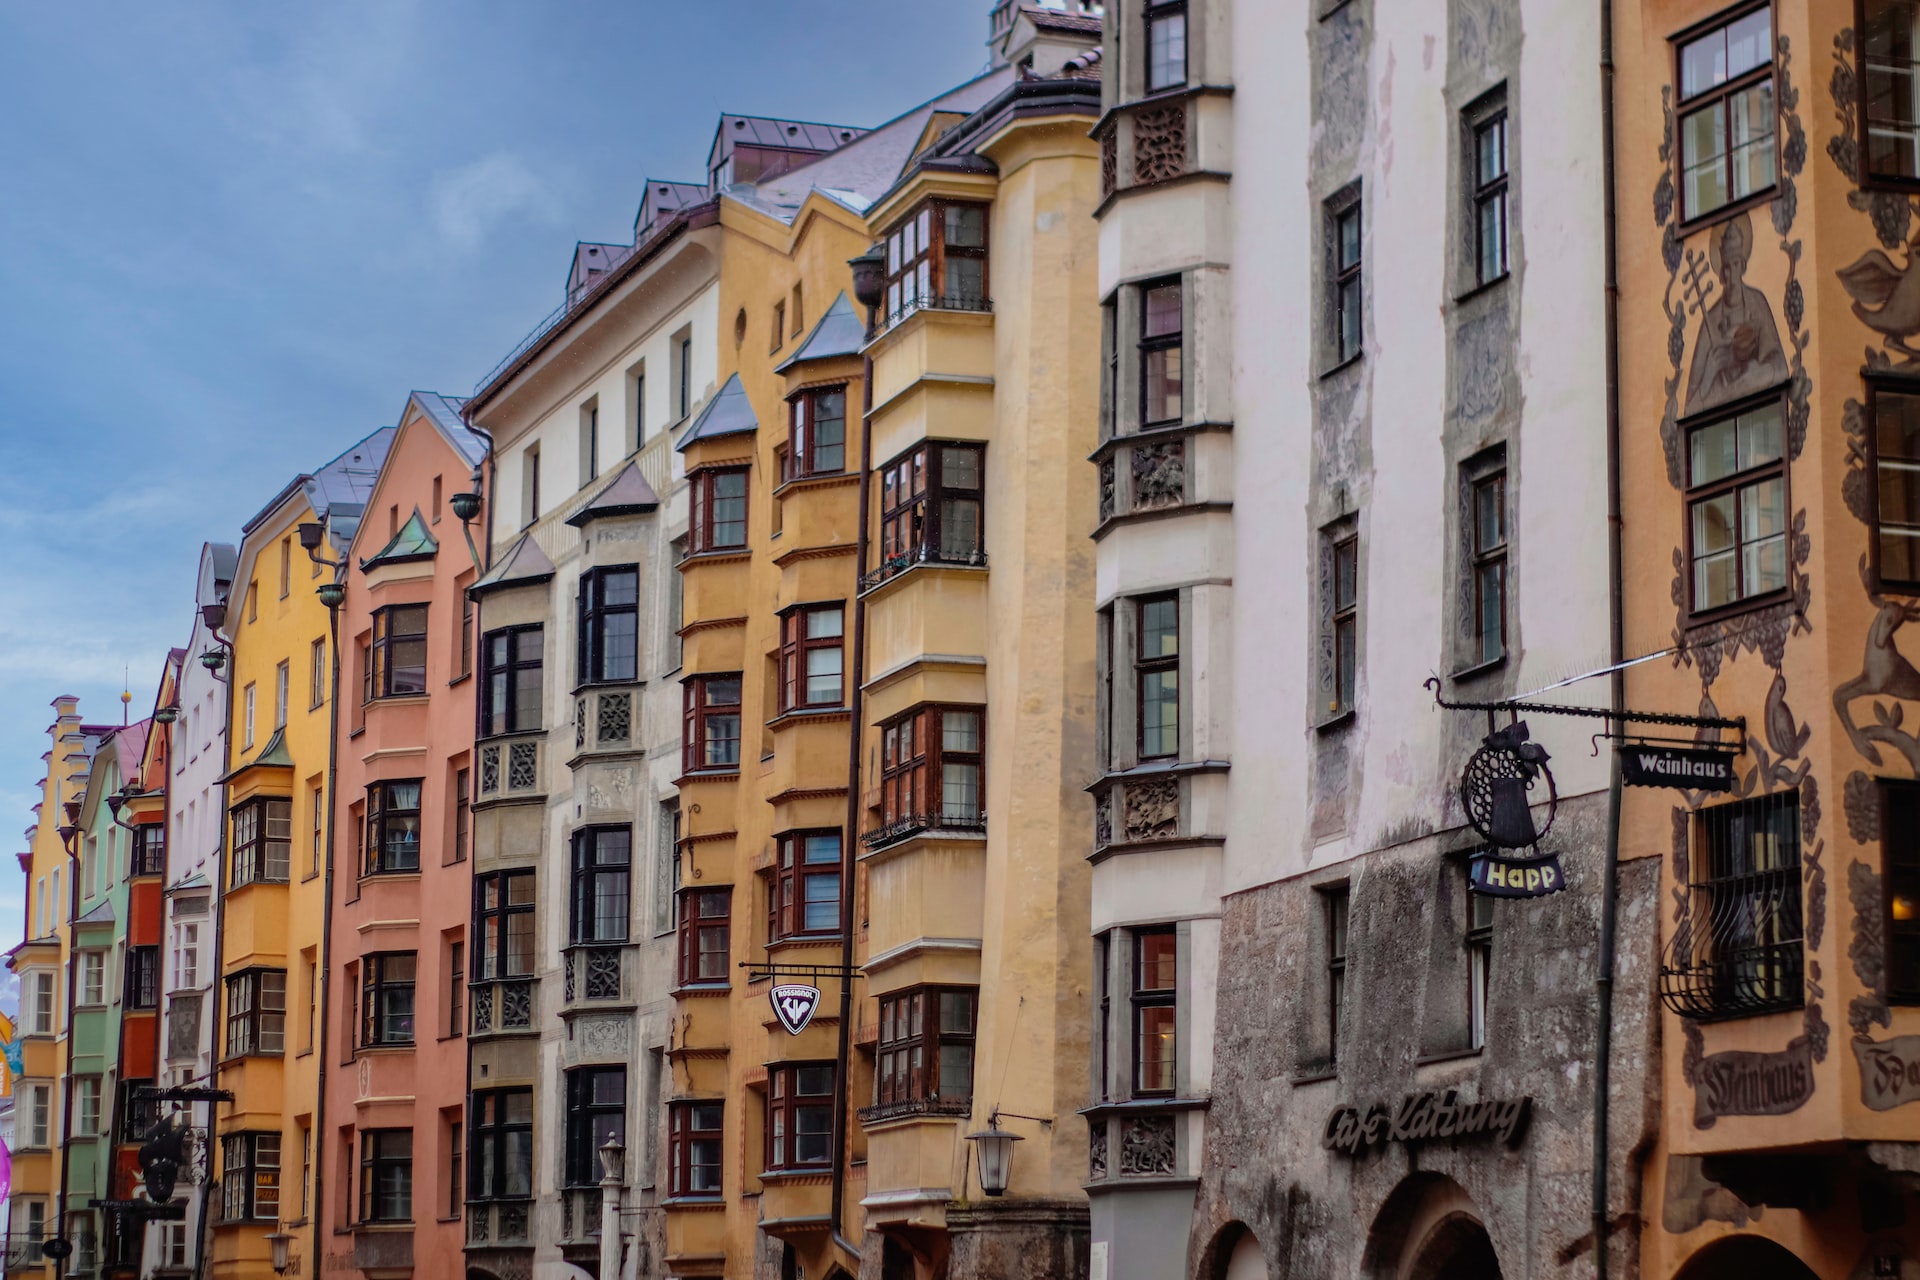 Wohnungen mit bunten Fassaden in Österreich bei Tageslicht